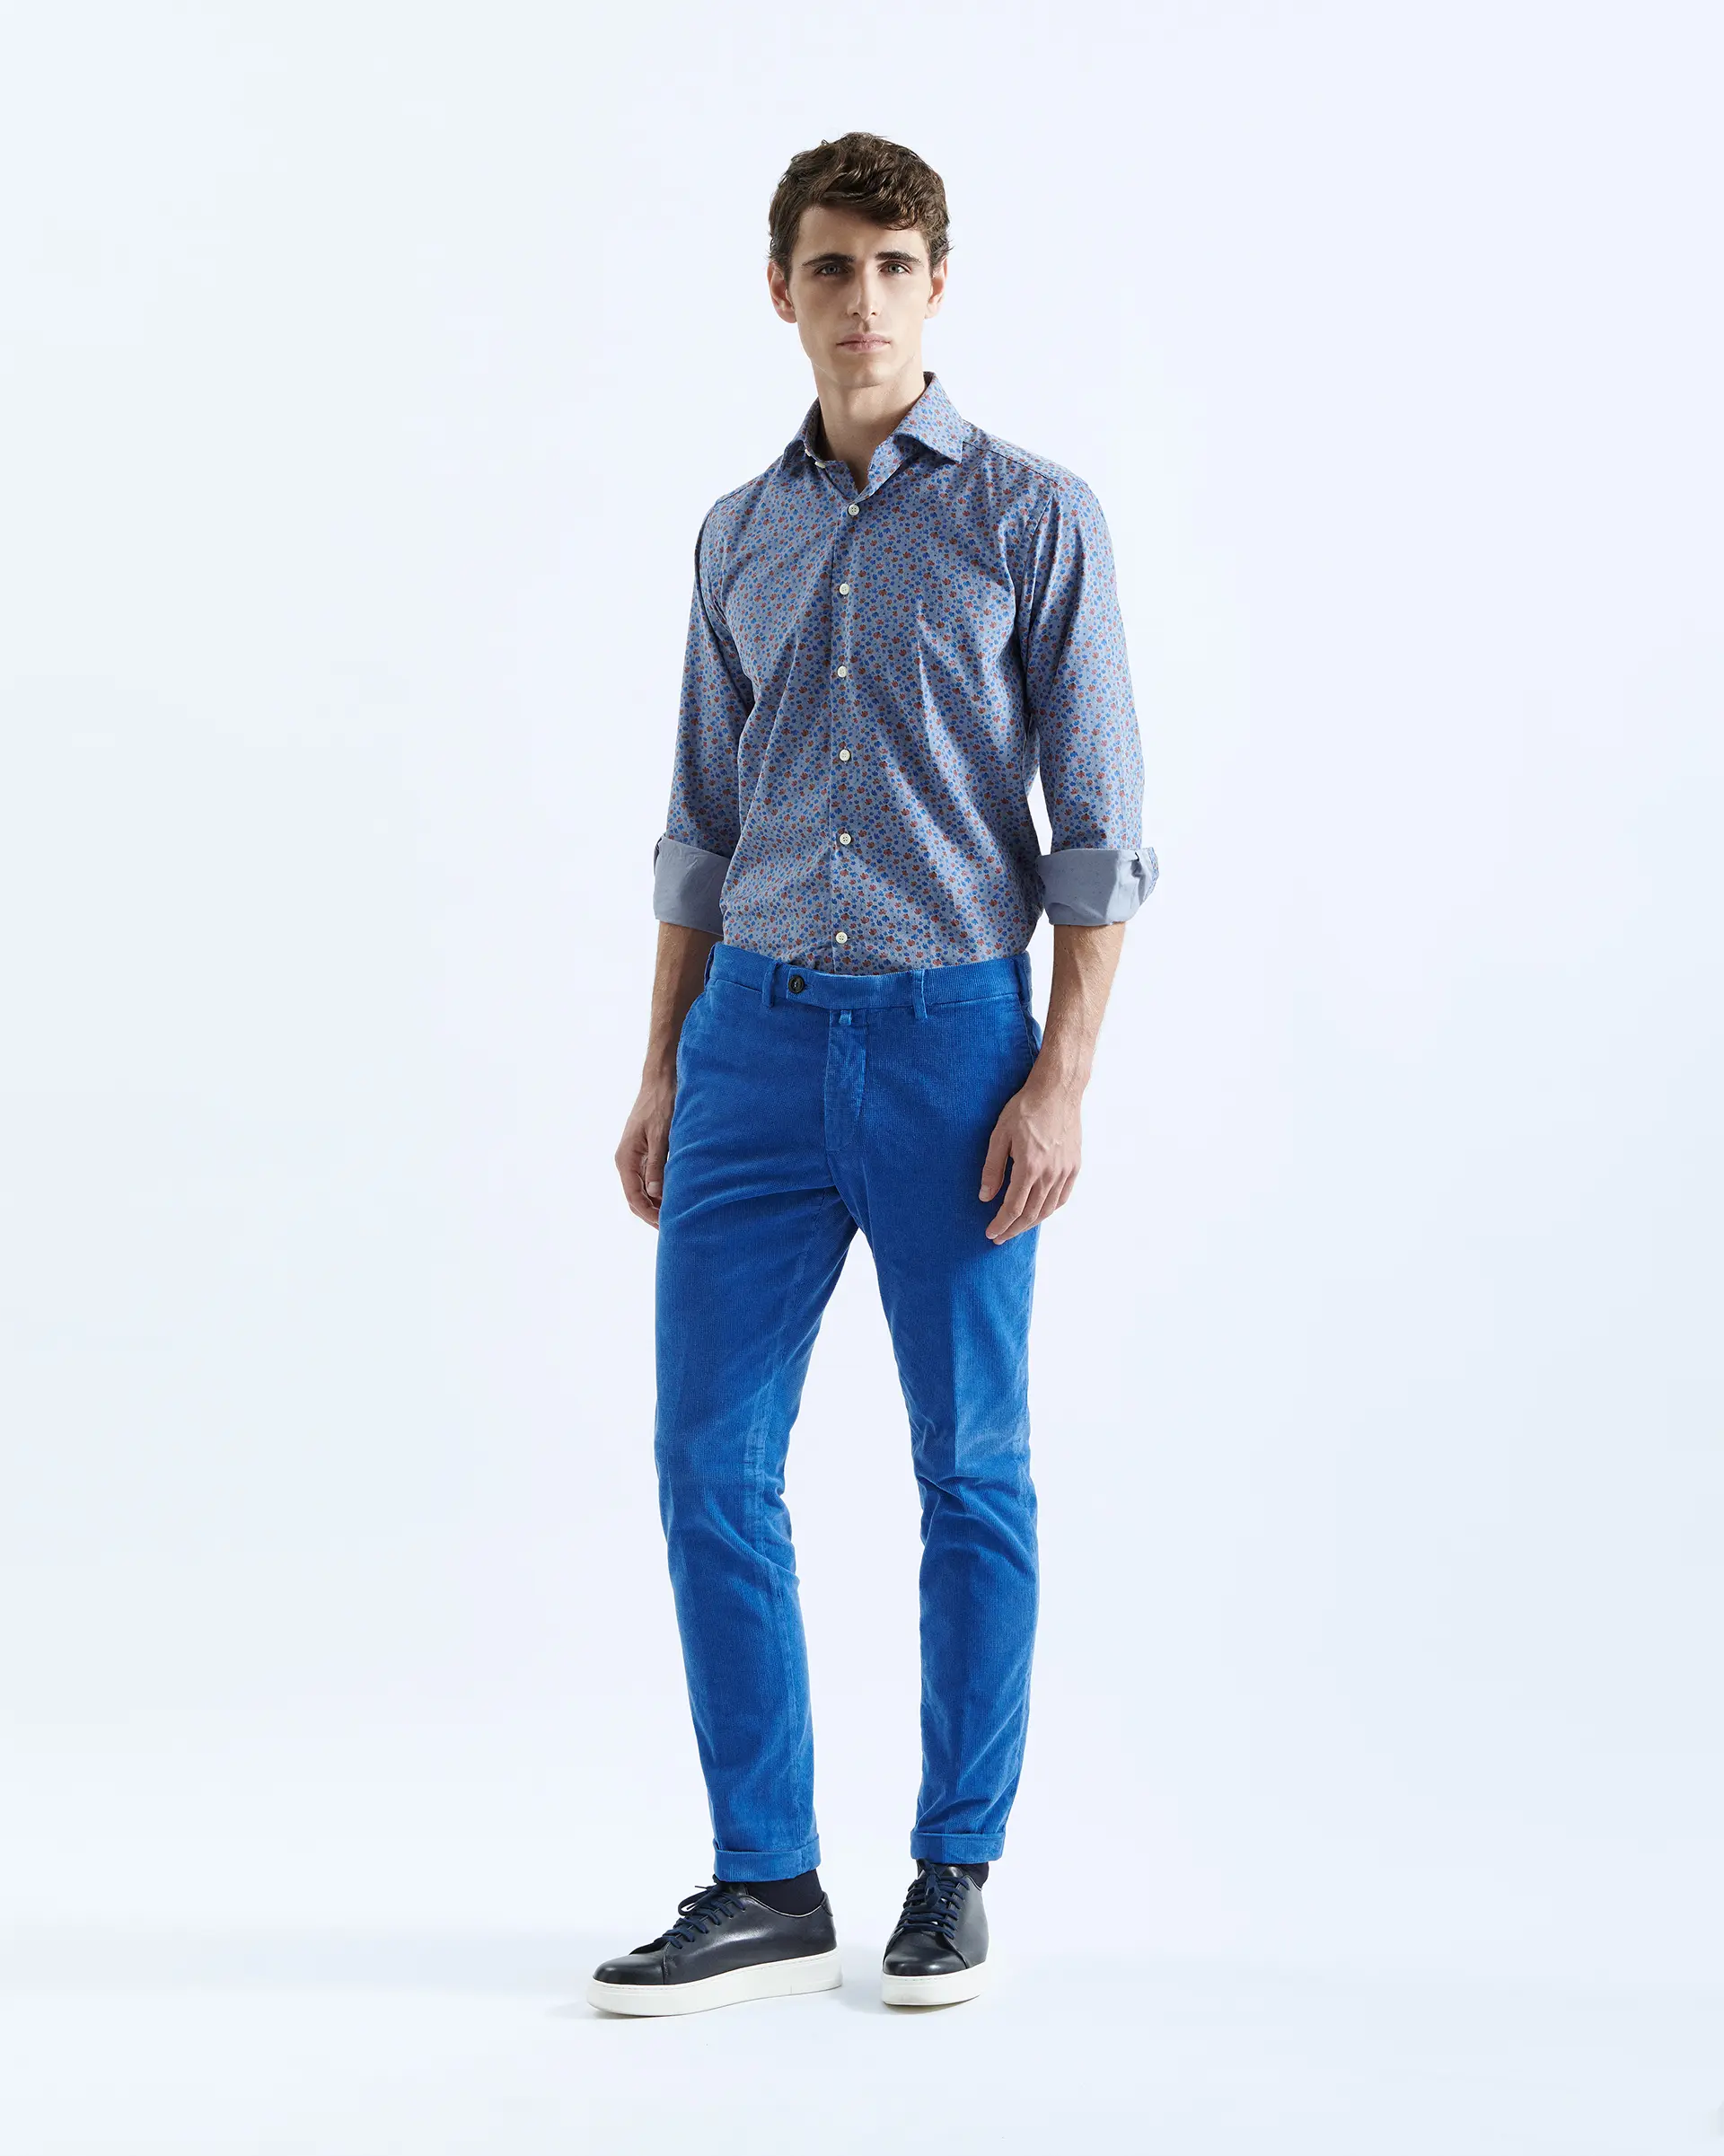 Pantalone azzurro in velluto martellato cotone stretch